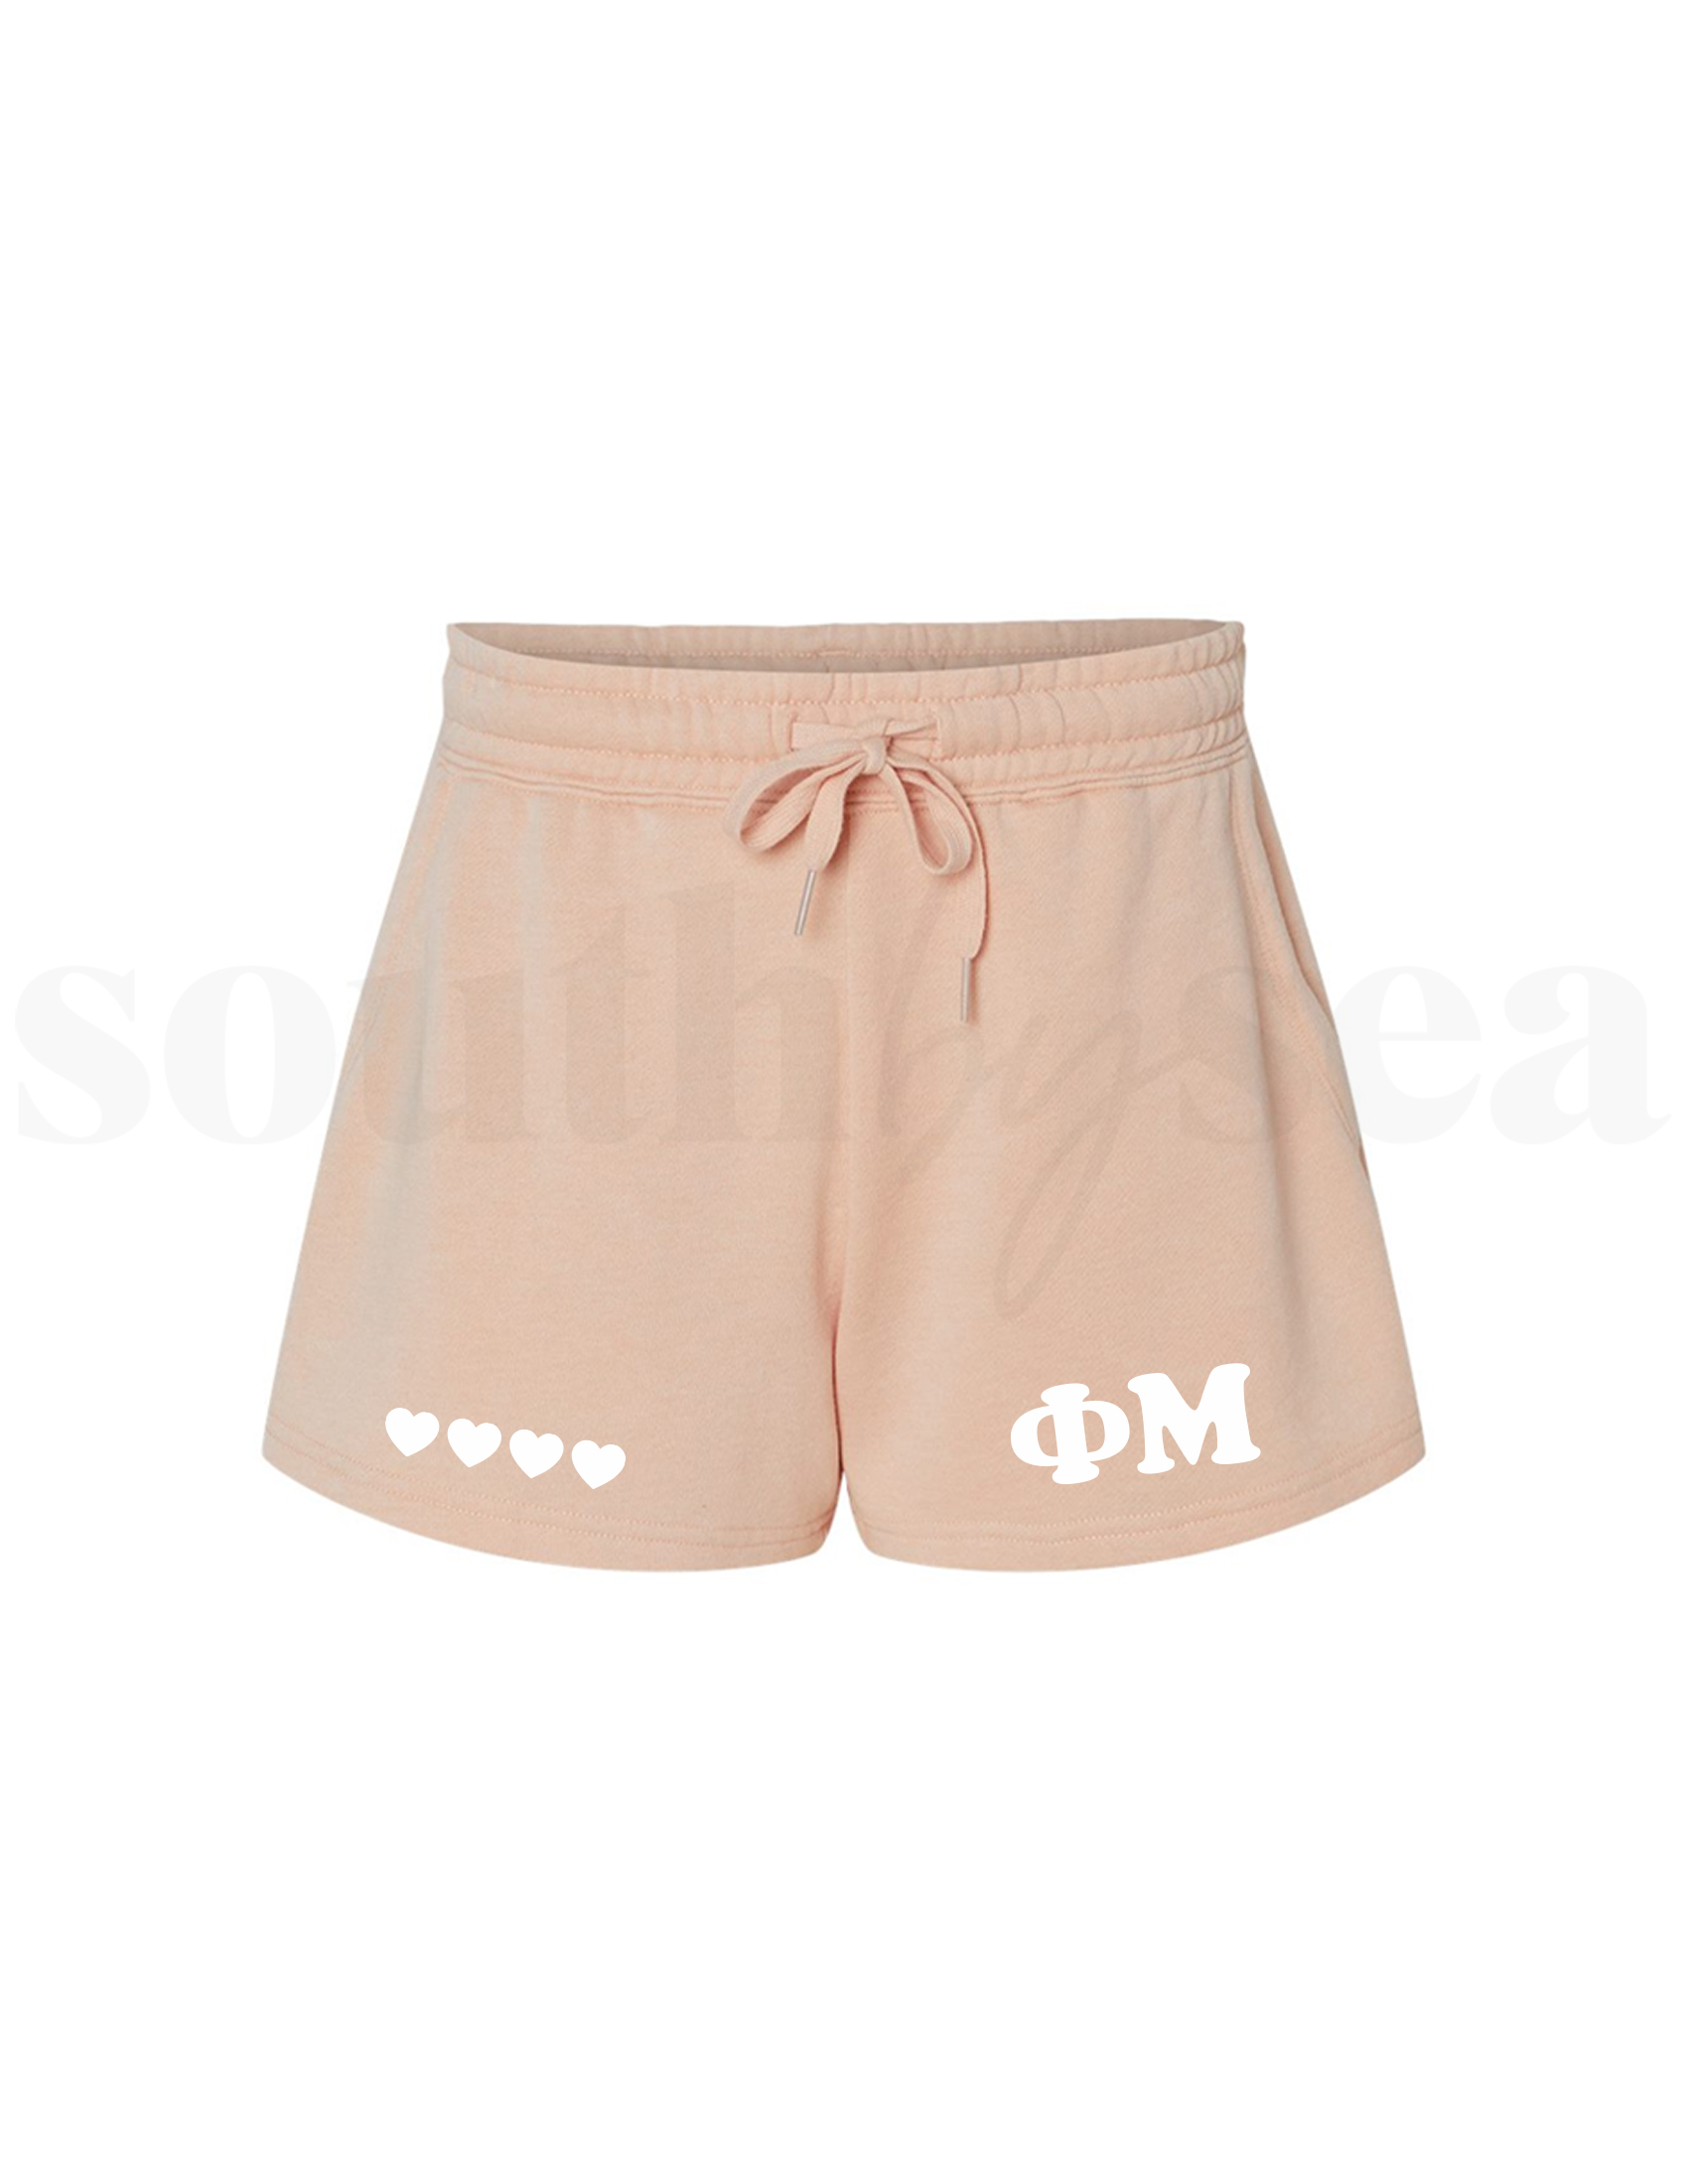 Phi Mu Blush Shorts